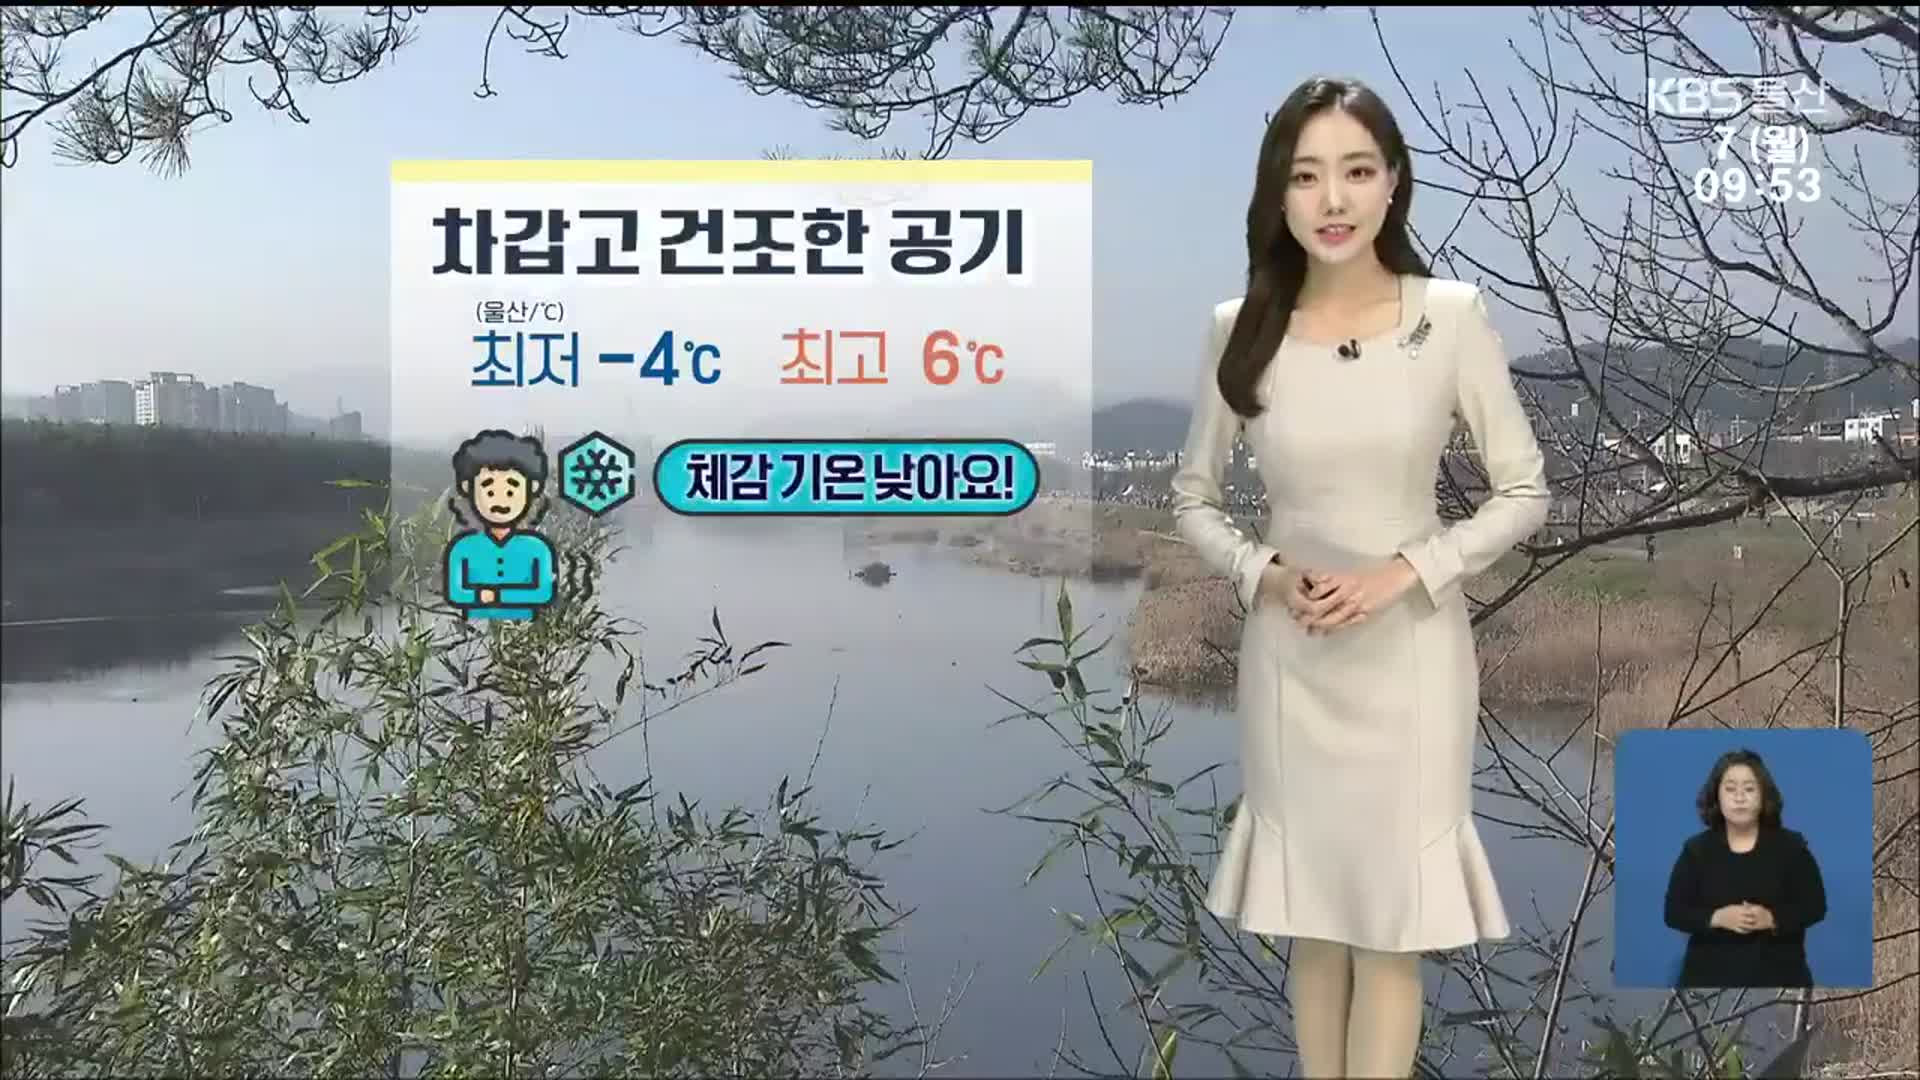 [날씨] 울산 오늘 낮 최고 6도…강한 바람으로 체감온도 ↓